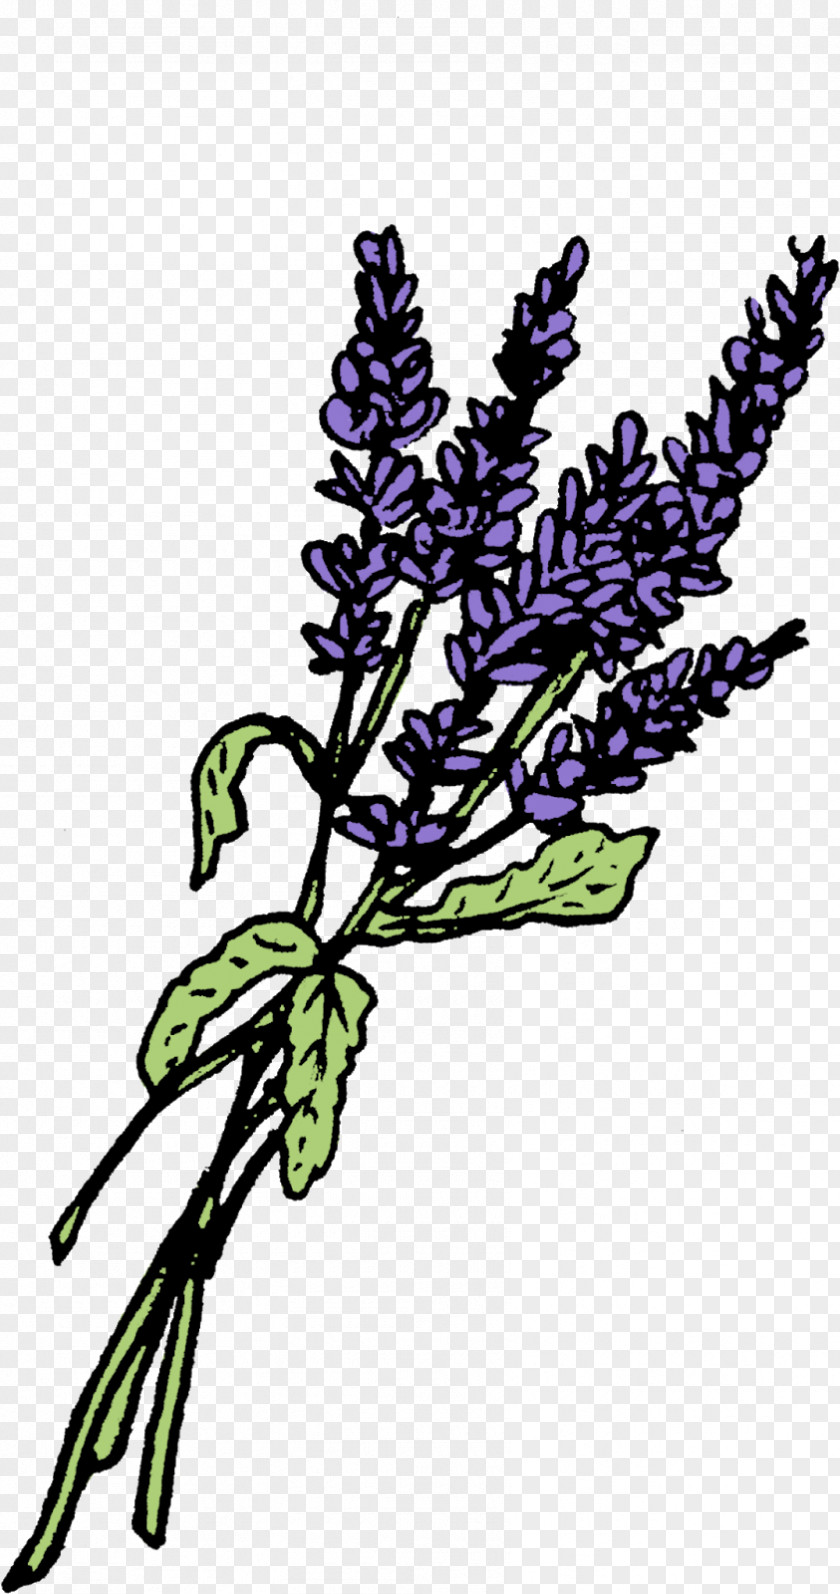 Potion Bottle Lavender Graphics Leaf Twig Plant Stem PNG